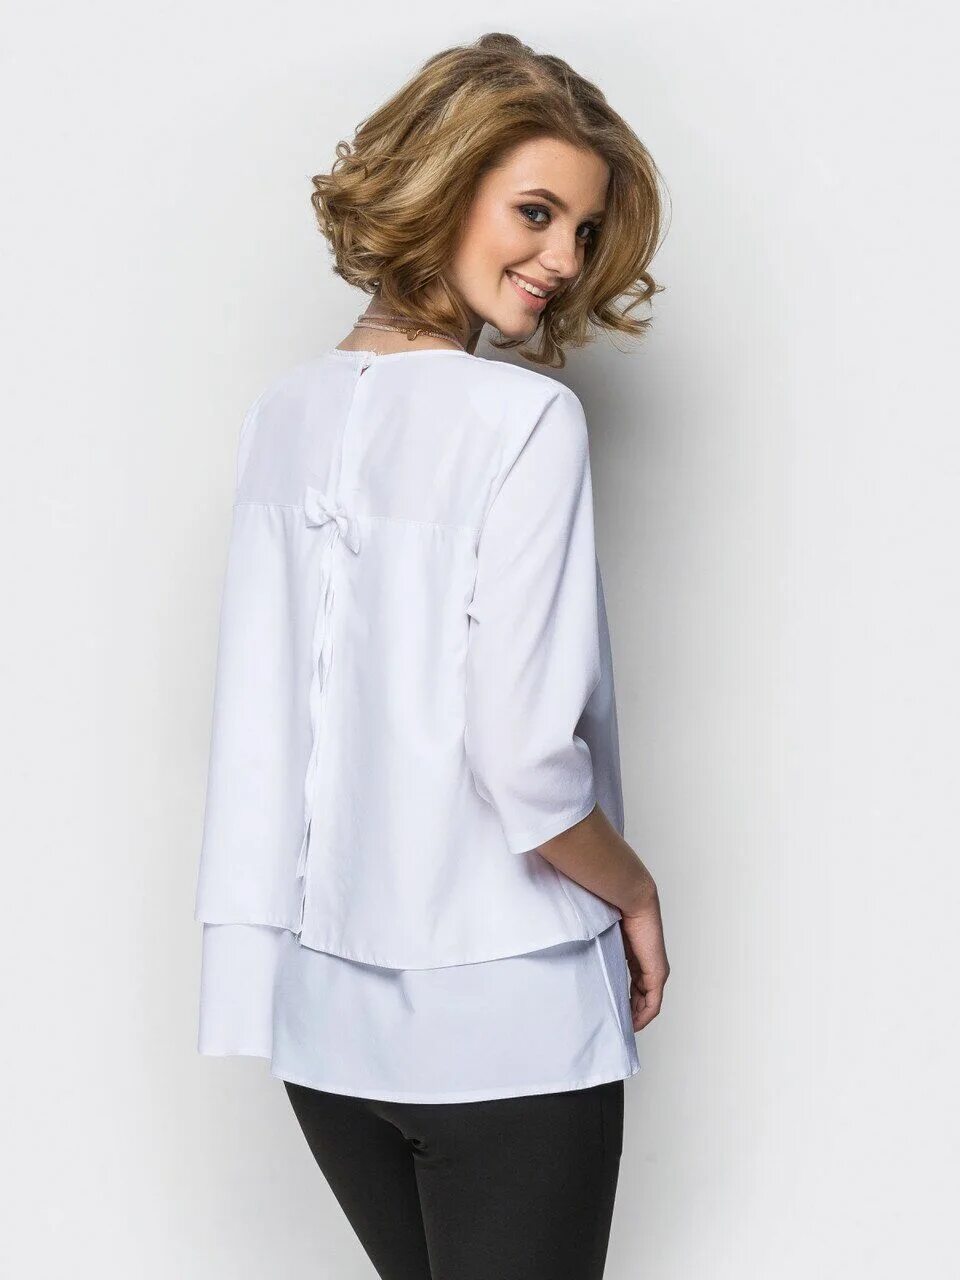 Валберис блузки с длинным рукавом. Белая блузка. Длинная блузка. Блузка необычного кроя. Женские блузки рубашечного покроя.